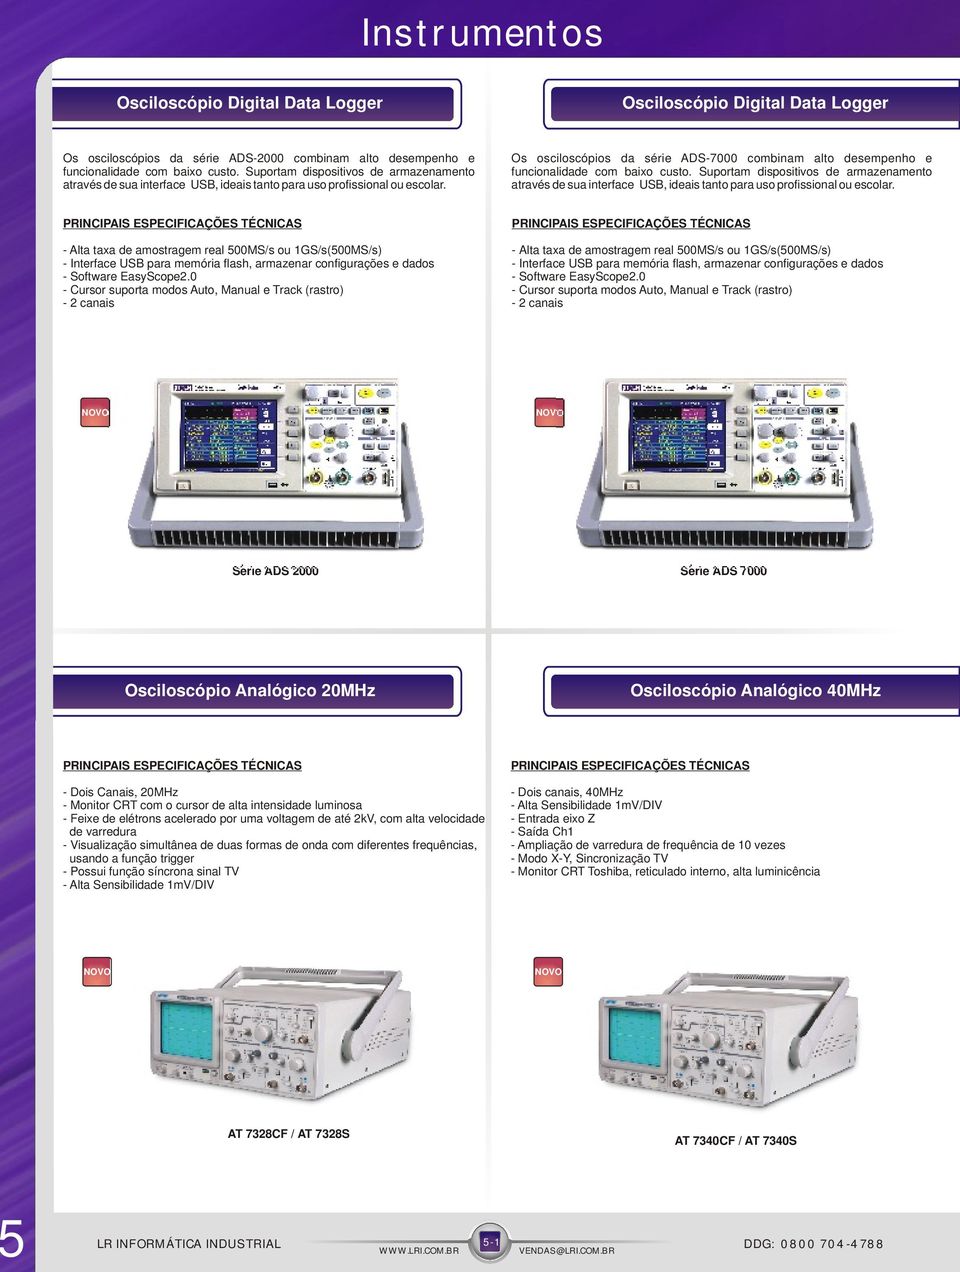 Os osciloscópios da série ADS-7000 combinam alto desempenho e funcionalidade com baixo custo.